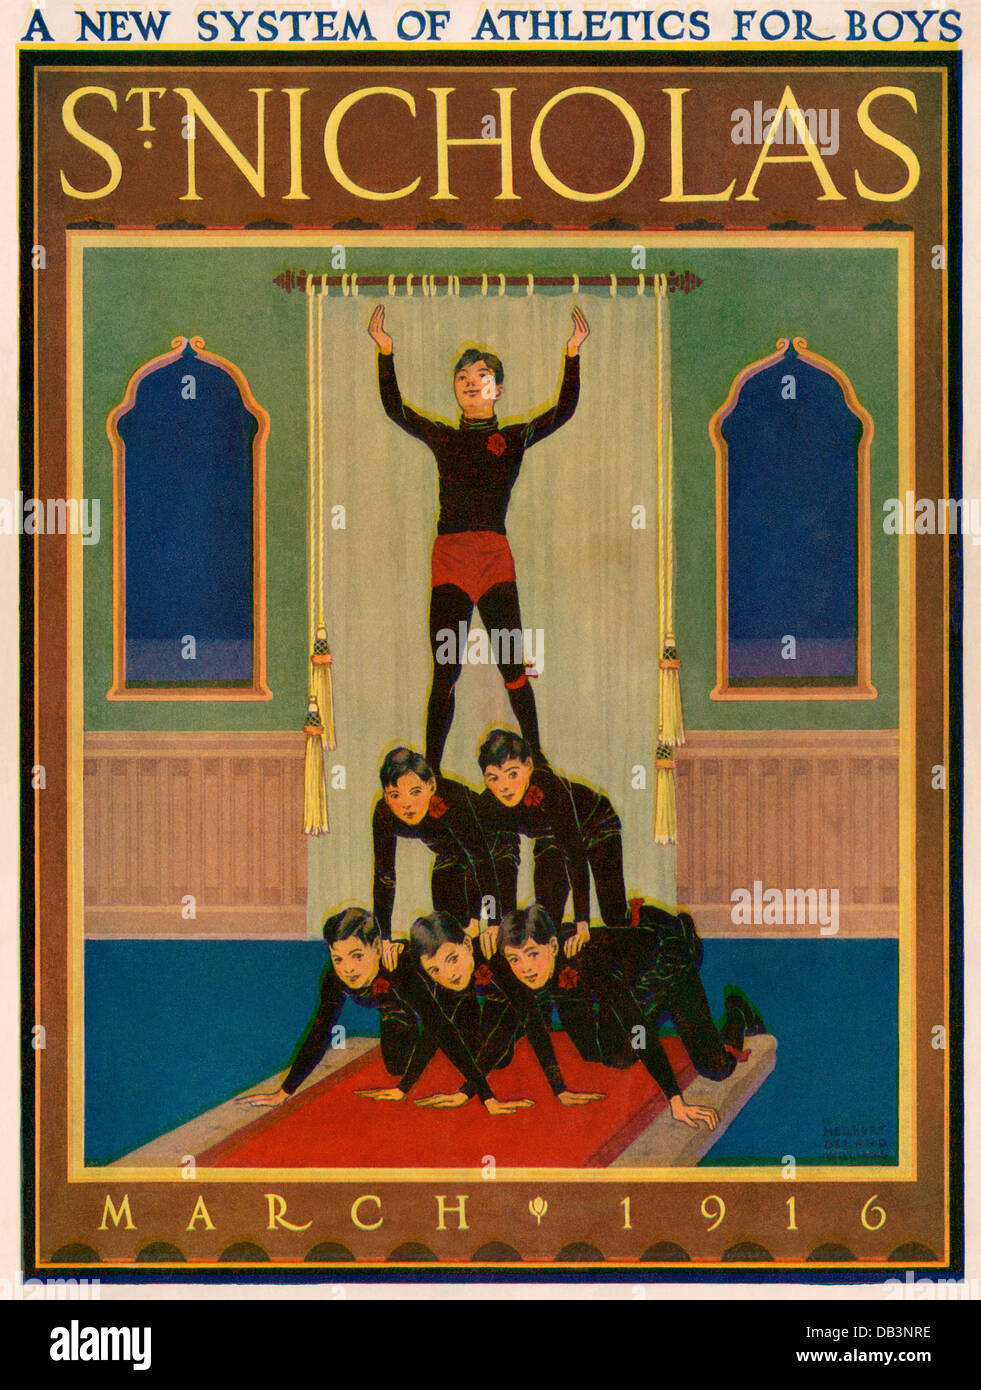 Couverture de Magazine de St Nicholas, mars 1916. Illustration de demi-teintes couleur Banque D'Images